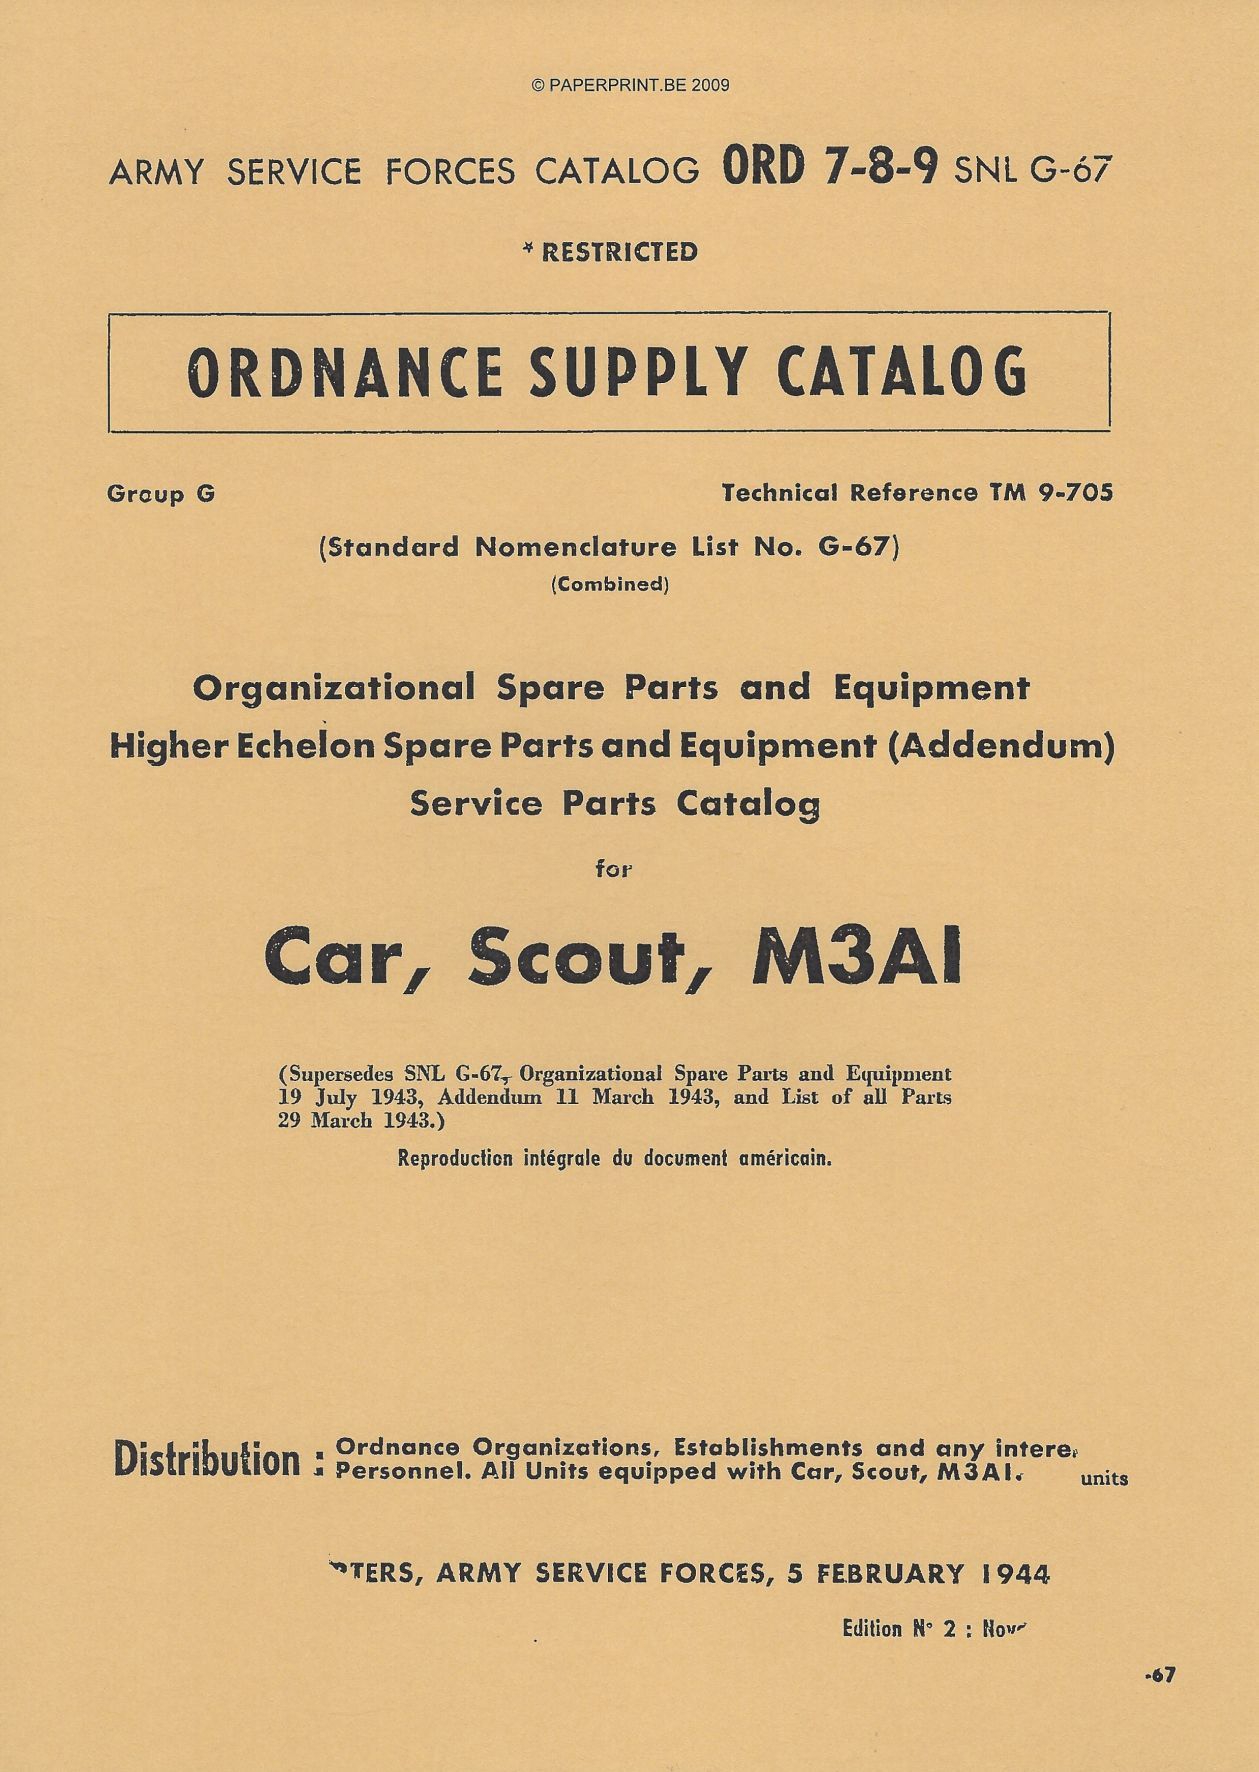 SNL G-67 US SERVICE PARTS CATALOG FOR CAR, SCOUT, M3A1